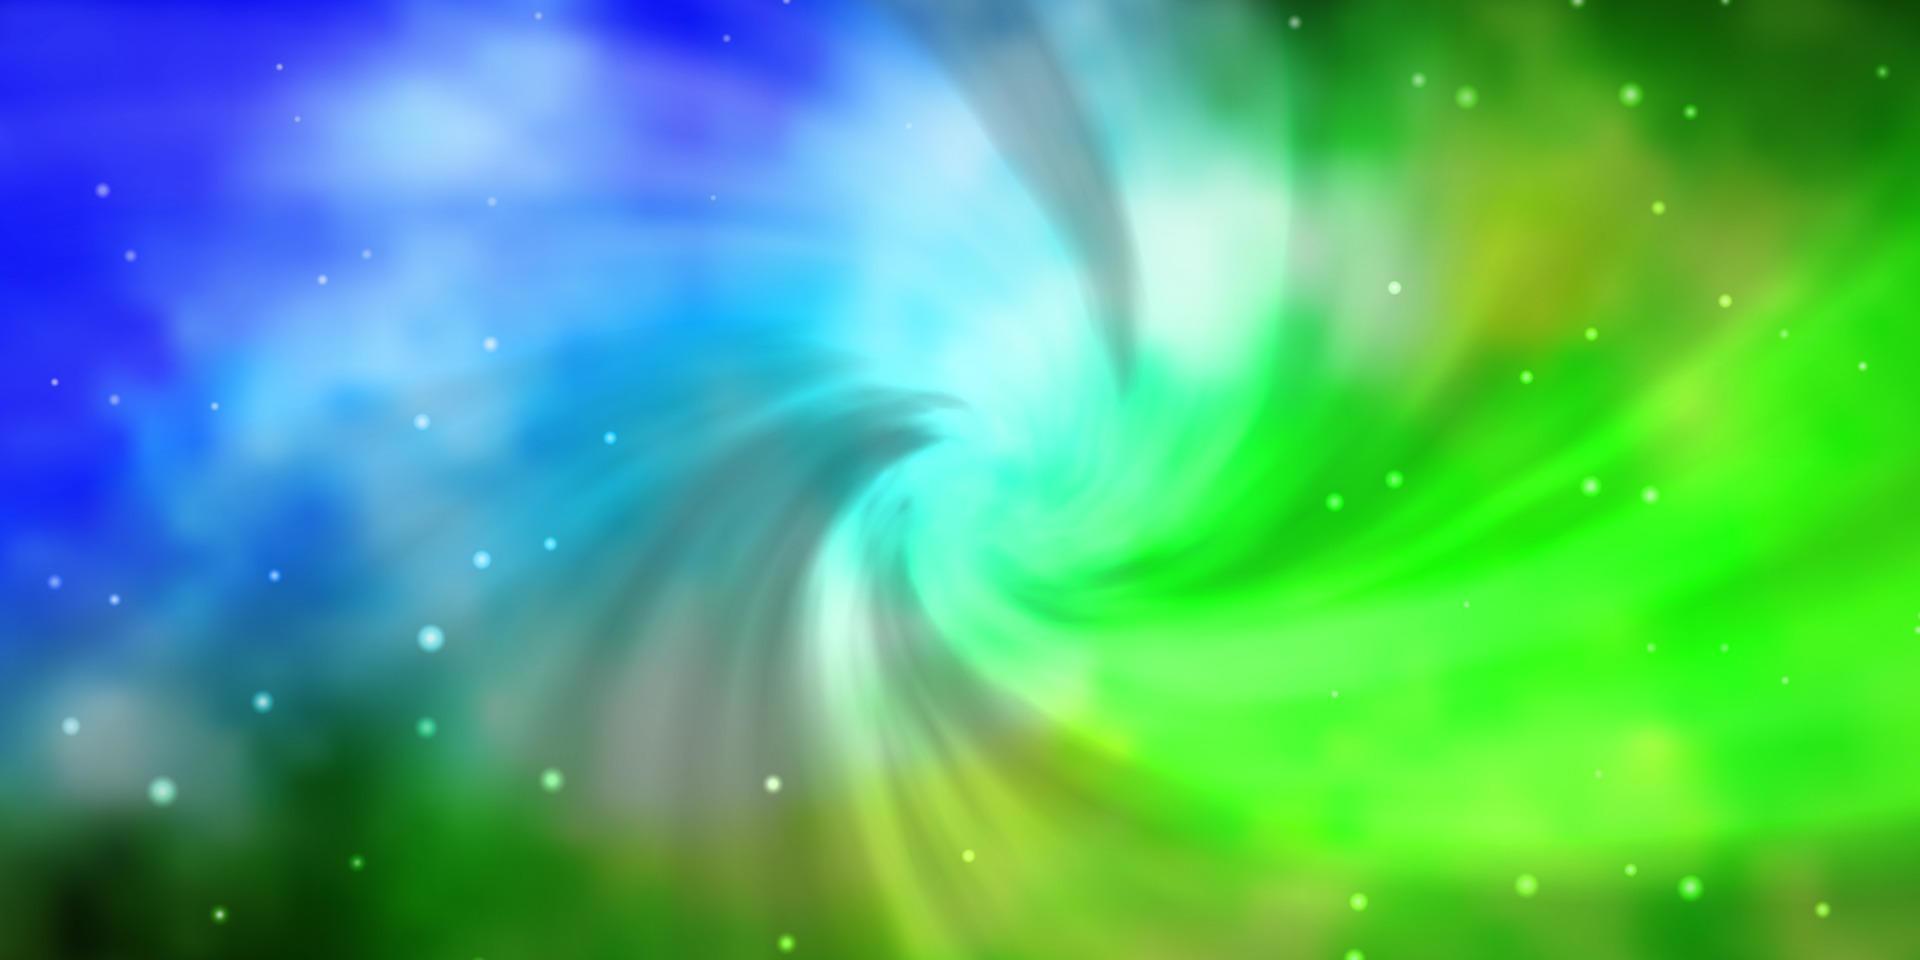 modèle vectoriel bleu clair, vert avec des étoiles abstraites.